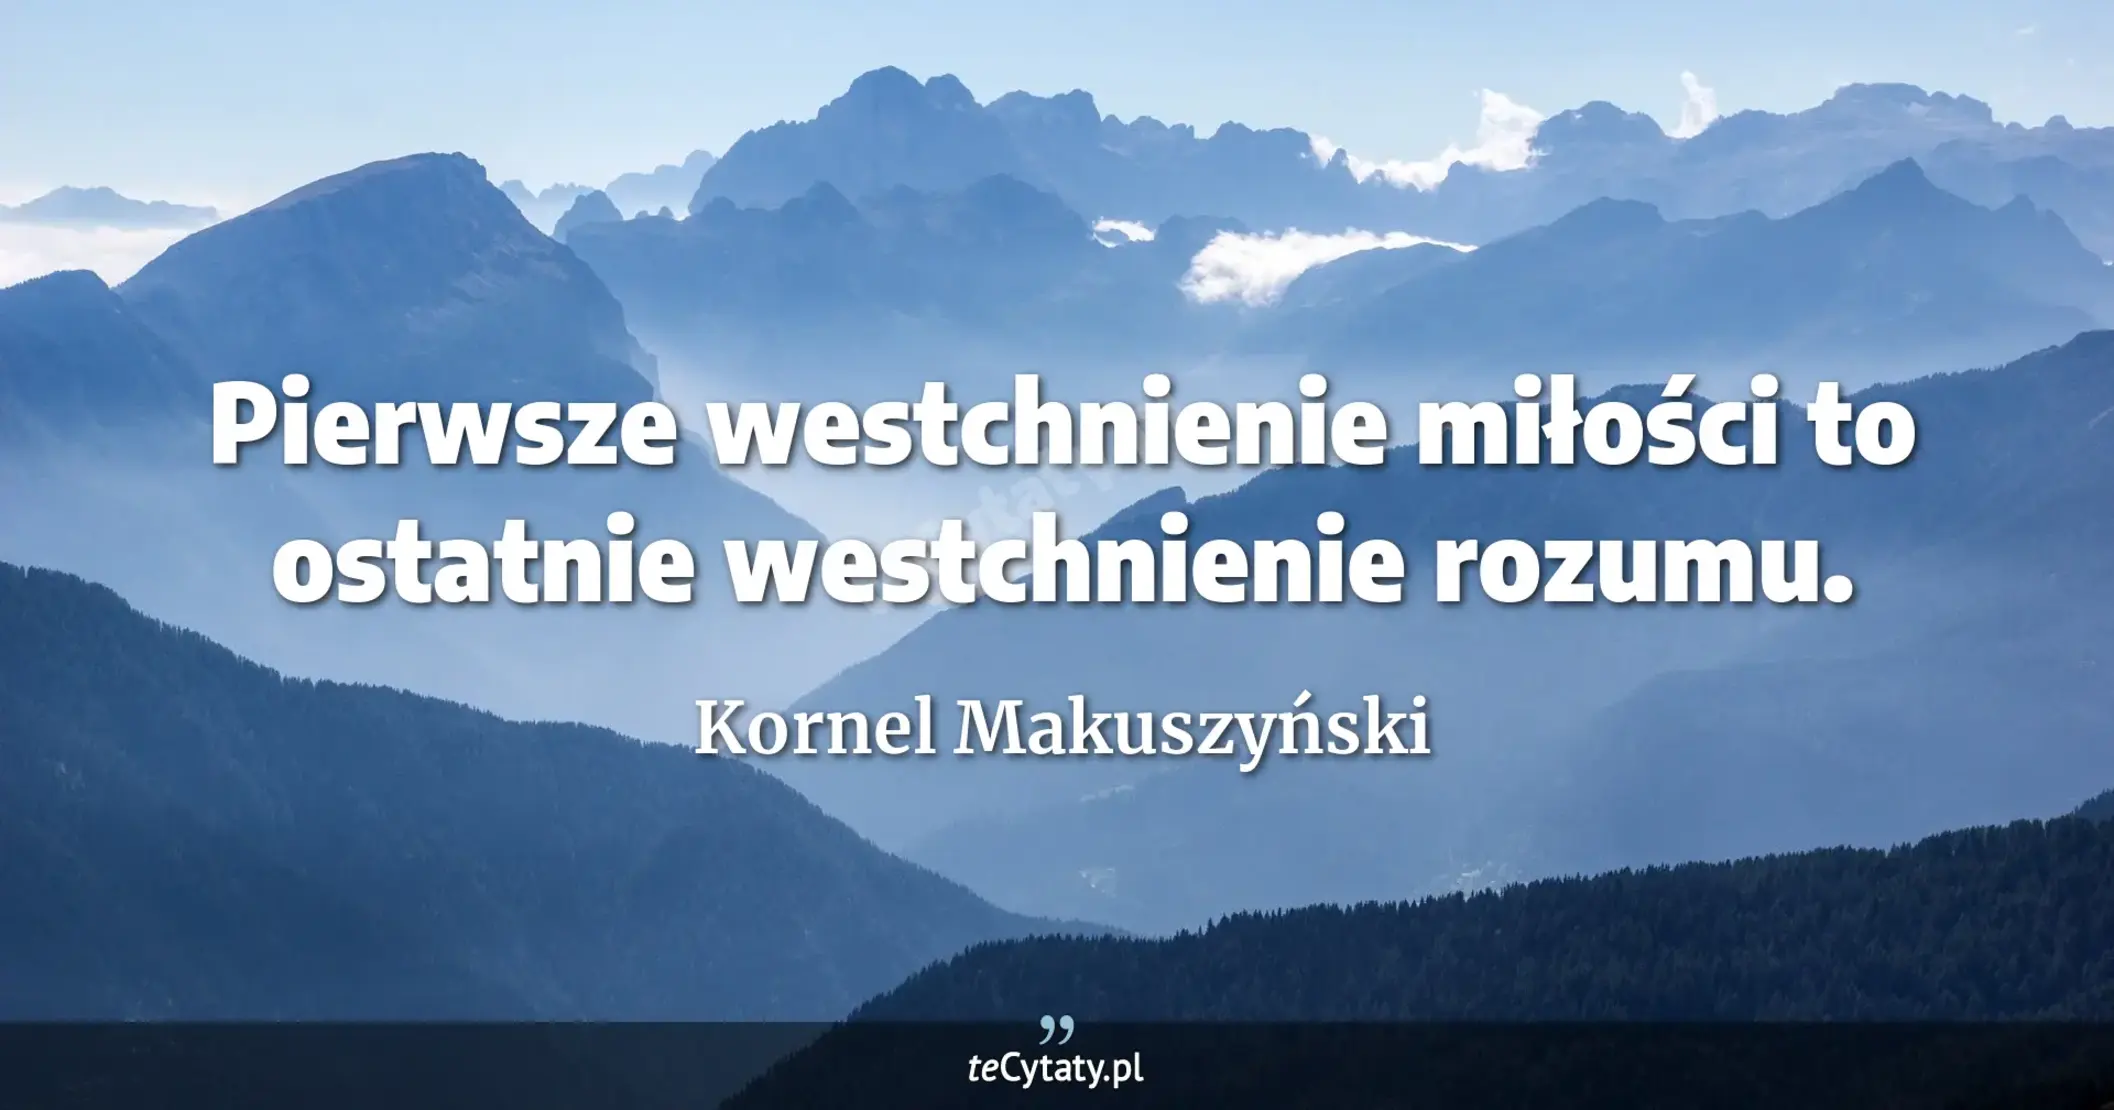 Pierwsze westchnienie miłości to ostatnie westchnienie rozumu. - Kornel Makuszyński